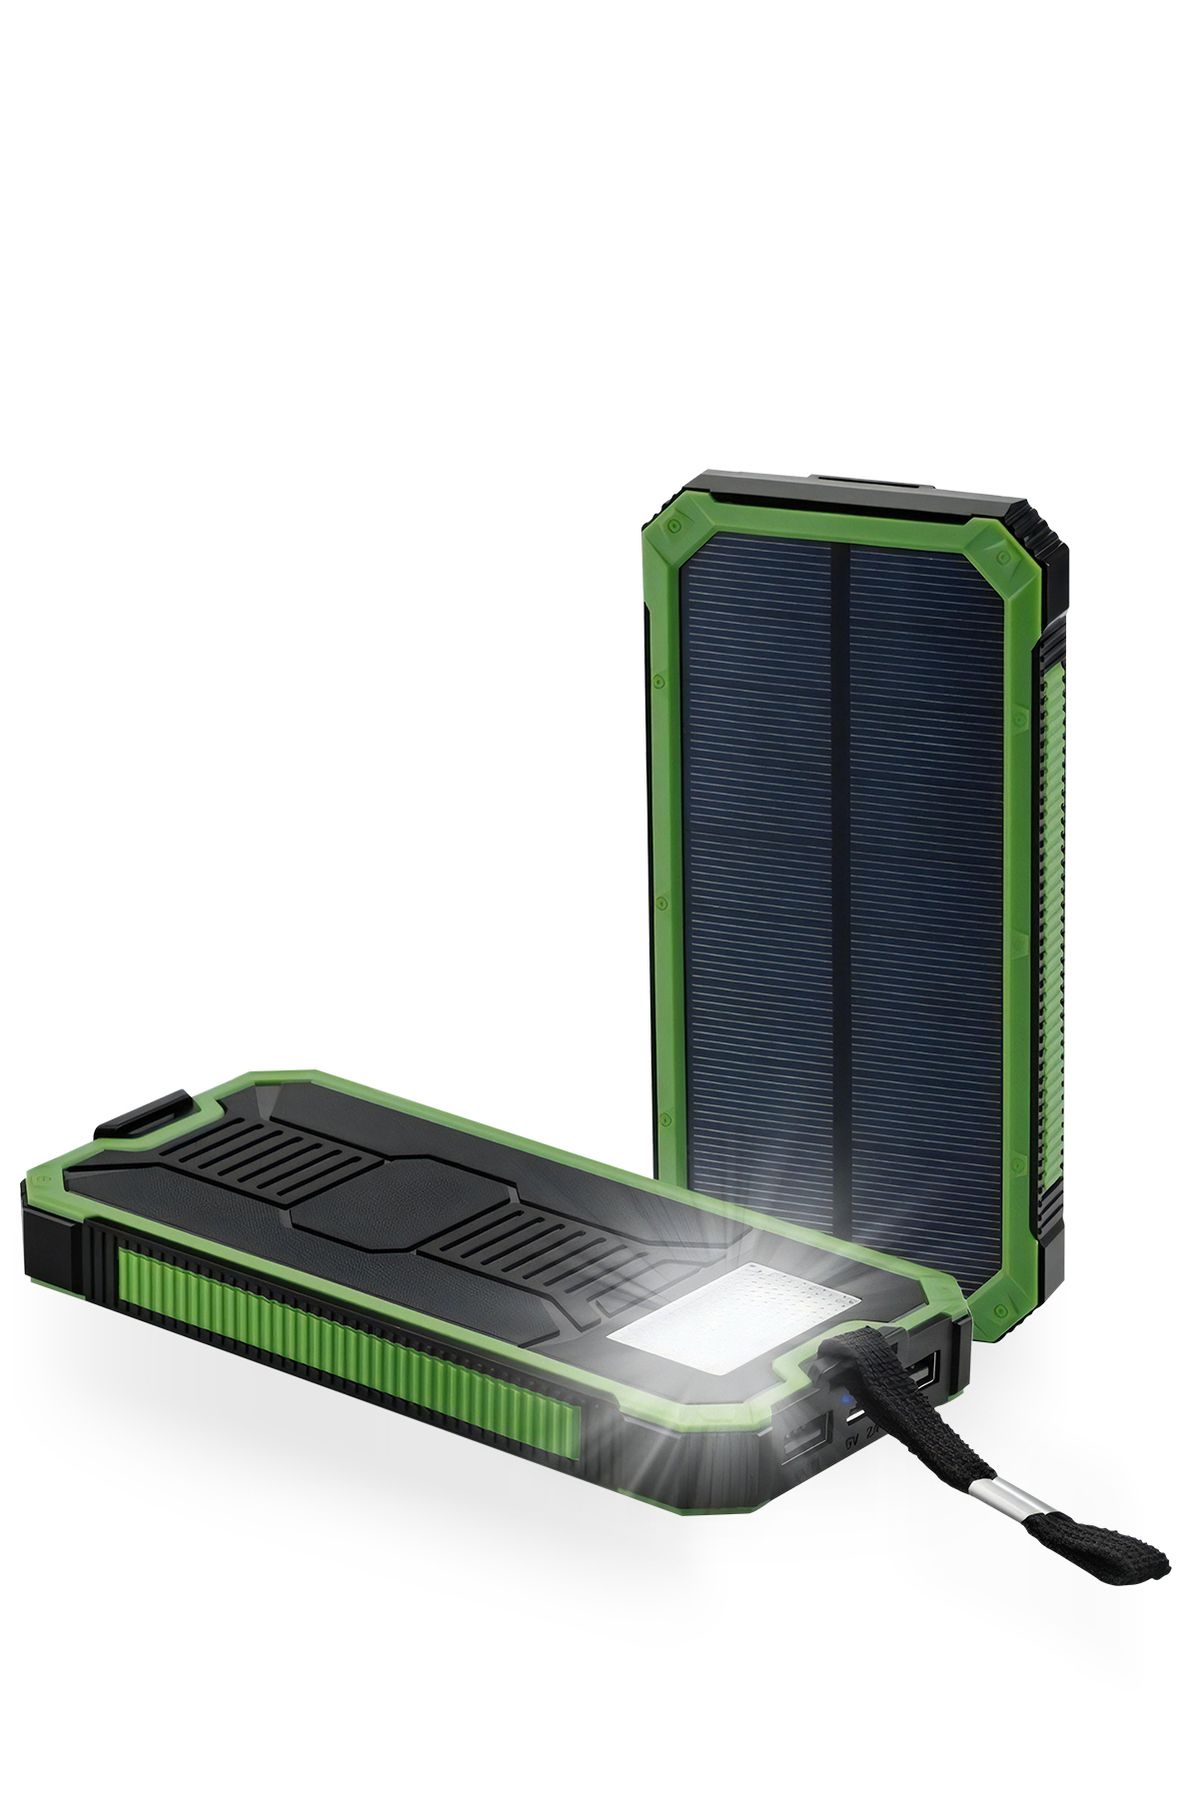 Deji Güneş Enerjili Solar Powerbank 10000mah Led Işıklı Taşınabilir Şarj Cihazı Yeşil